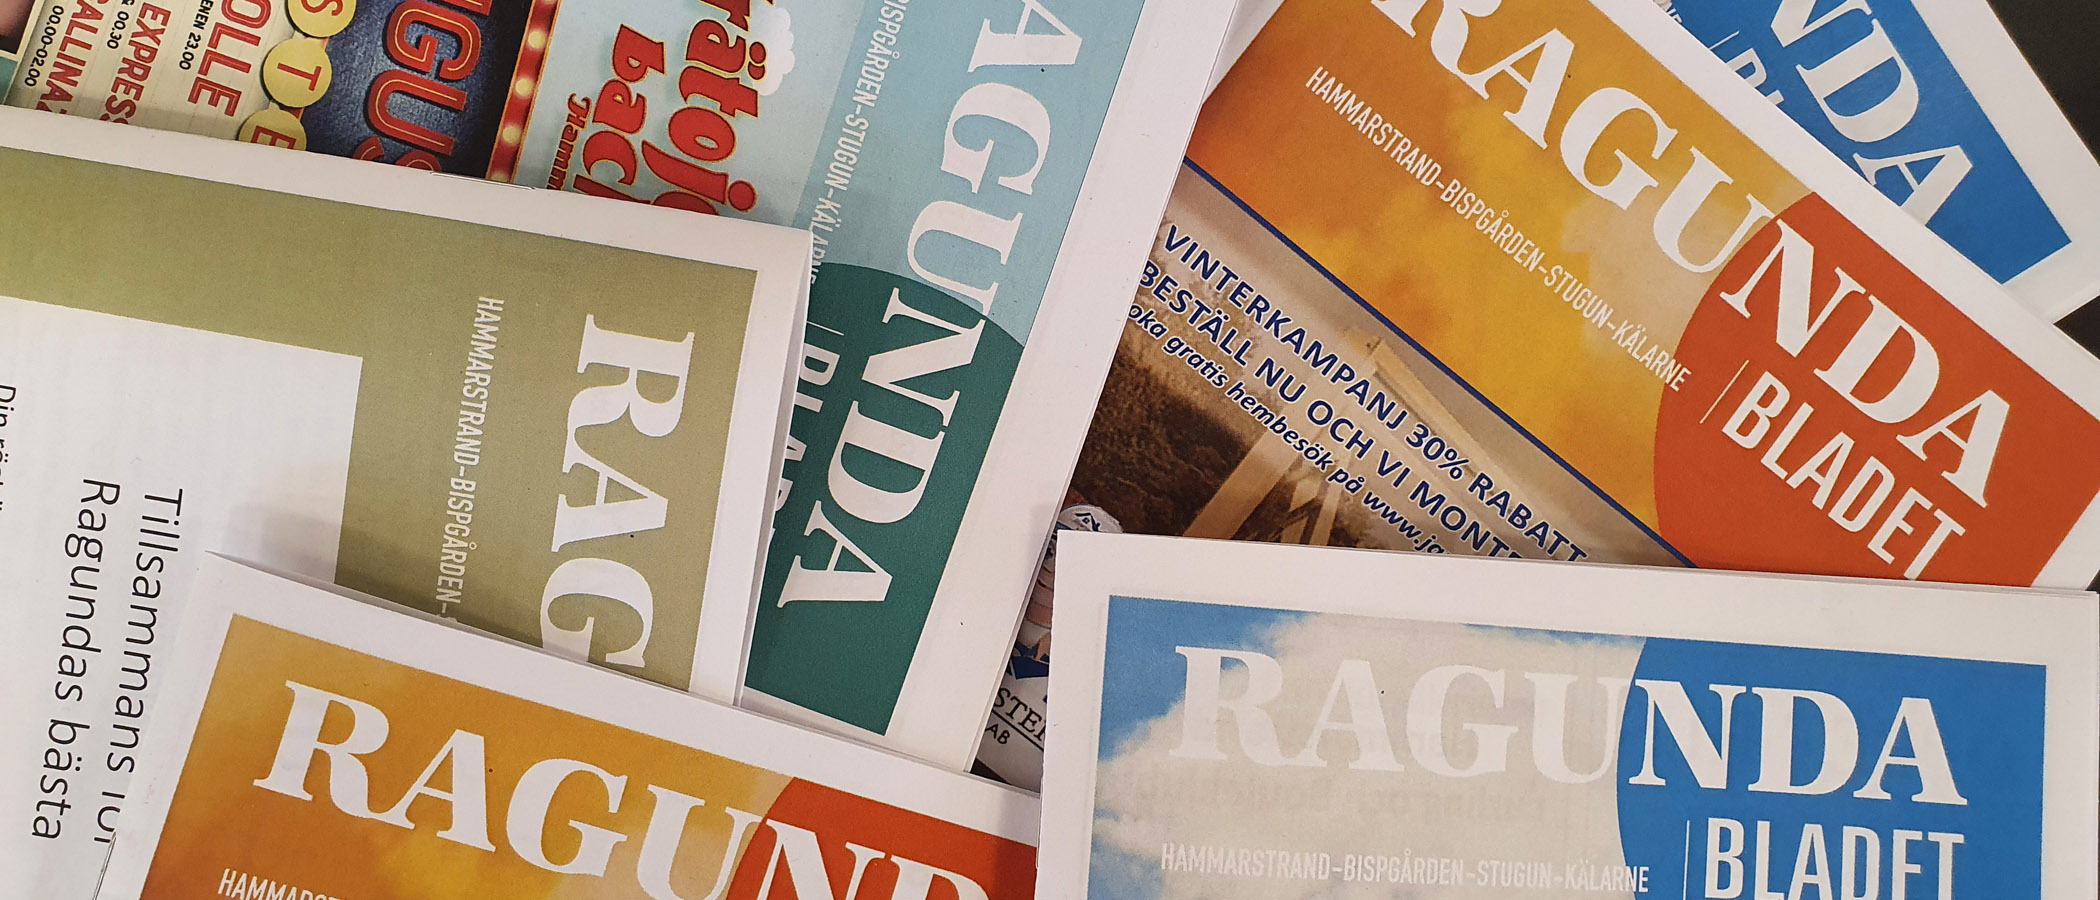 Ragundabladet är en gratis tidning som ges ut till alla hushåll i Ragunda kommun